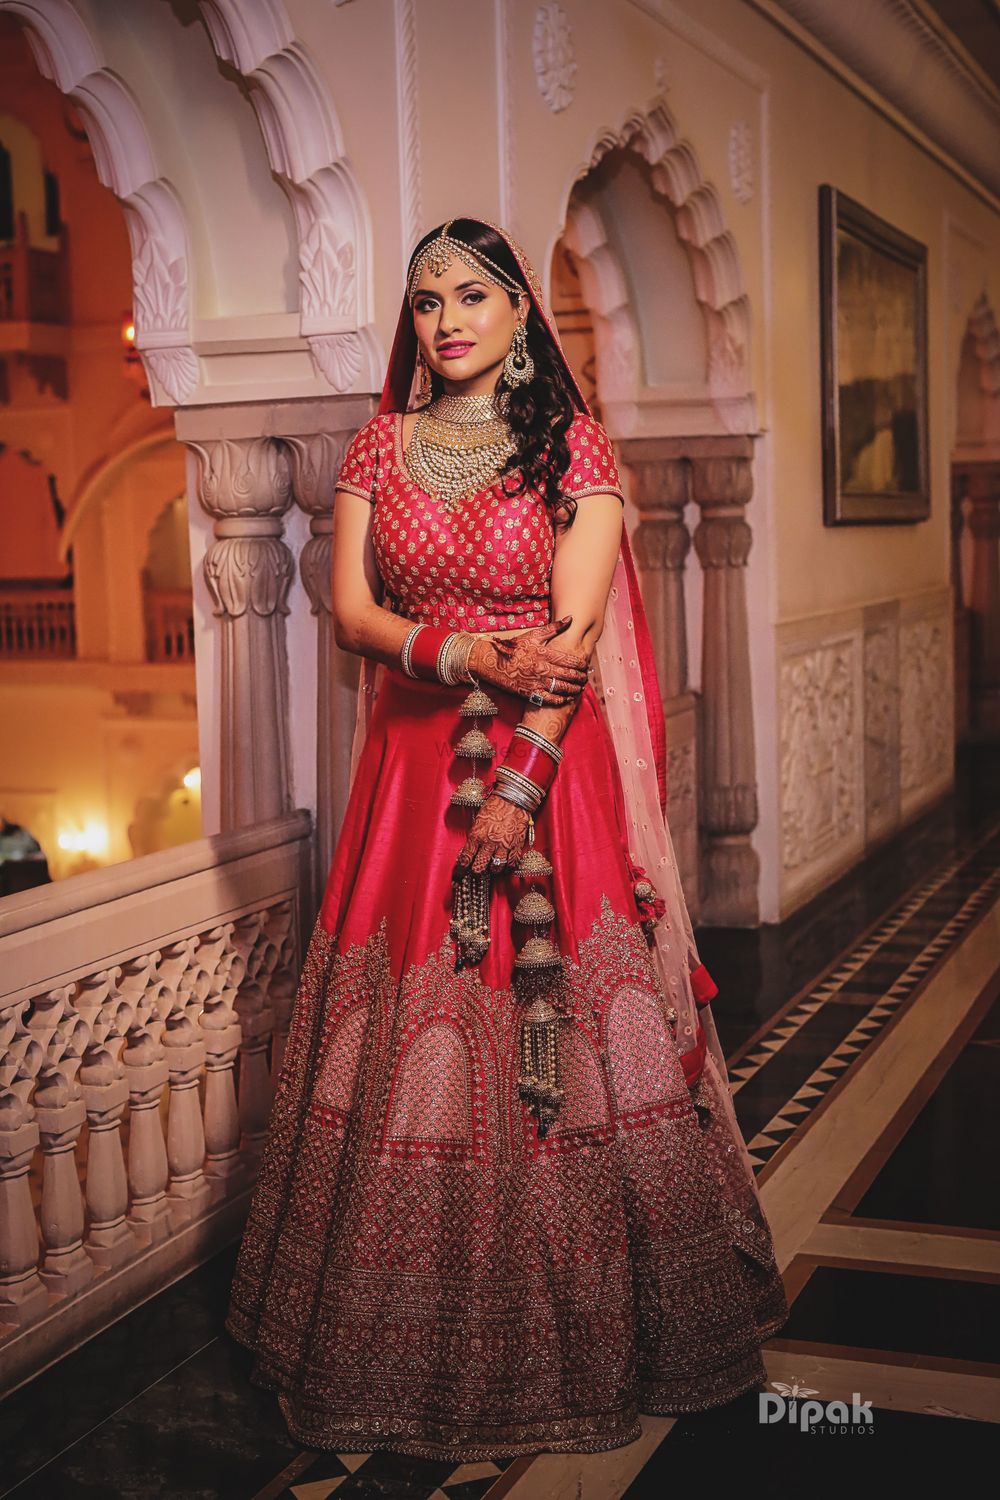 Photo of Red bridal lehenga for palace wedding